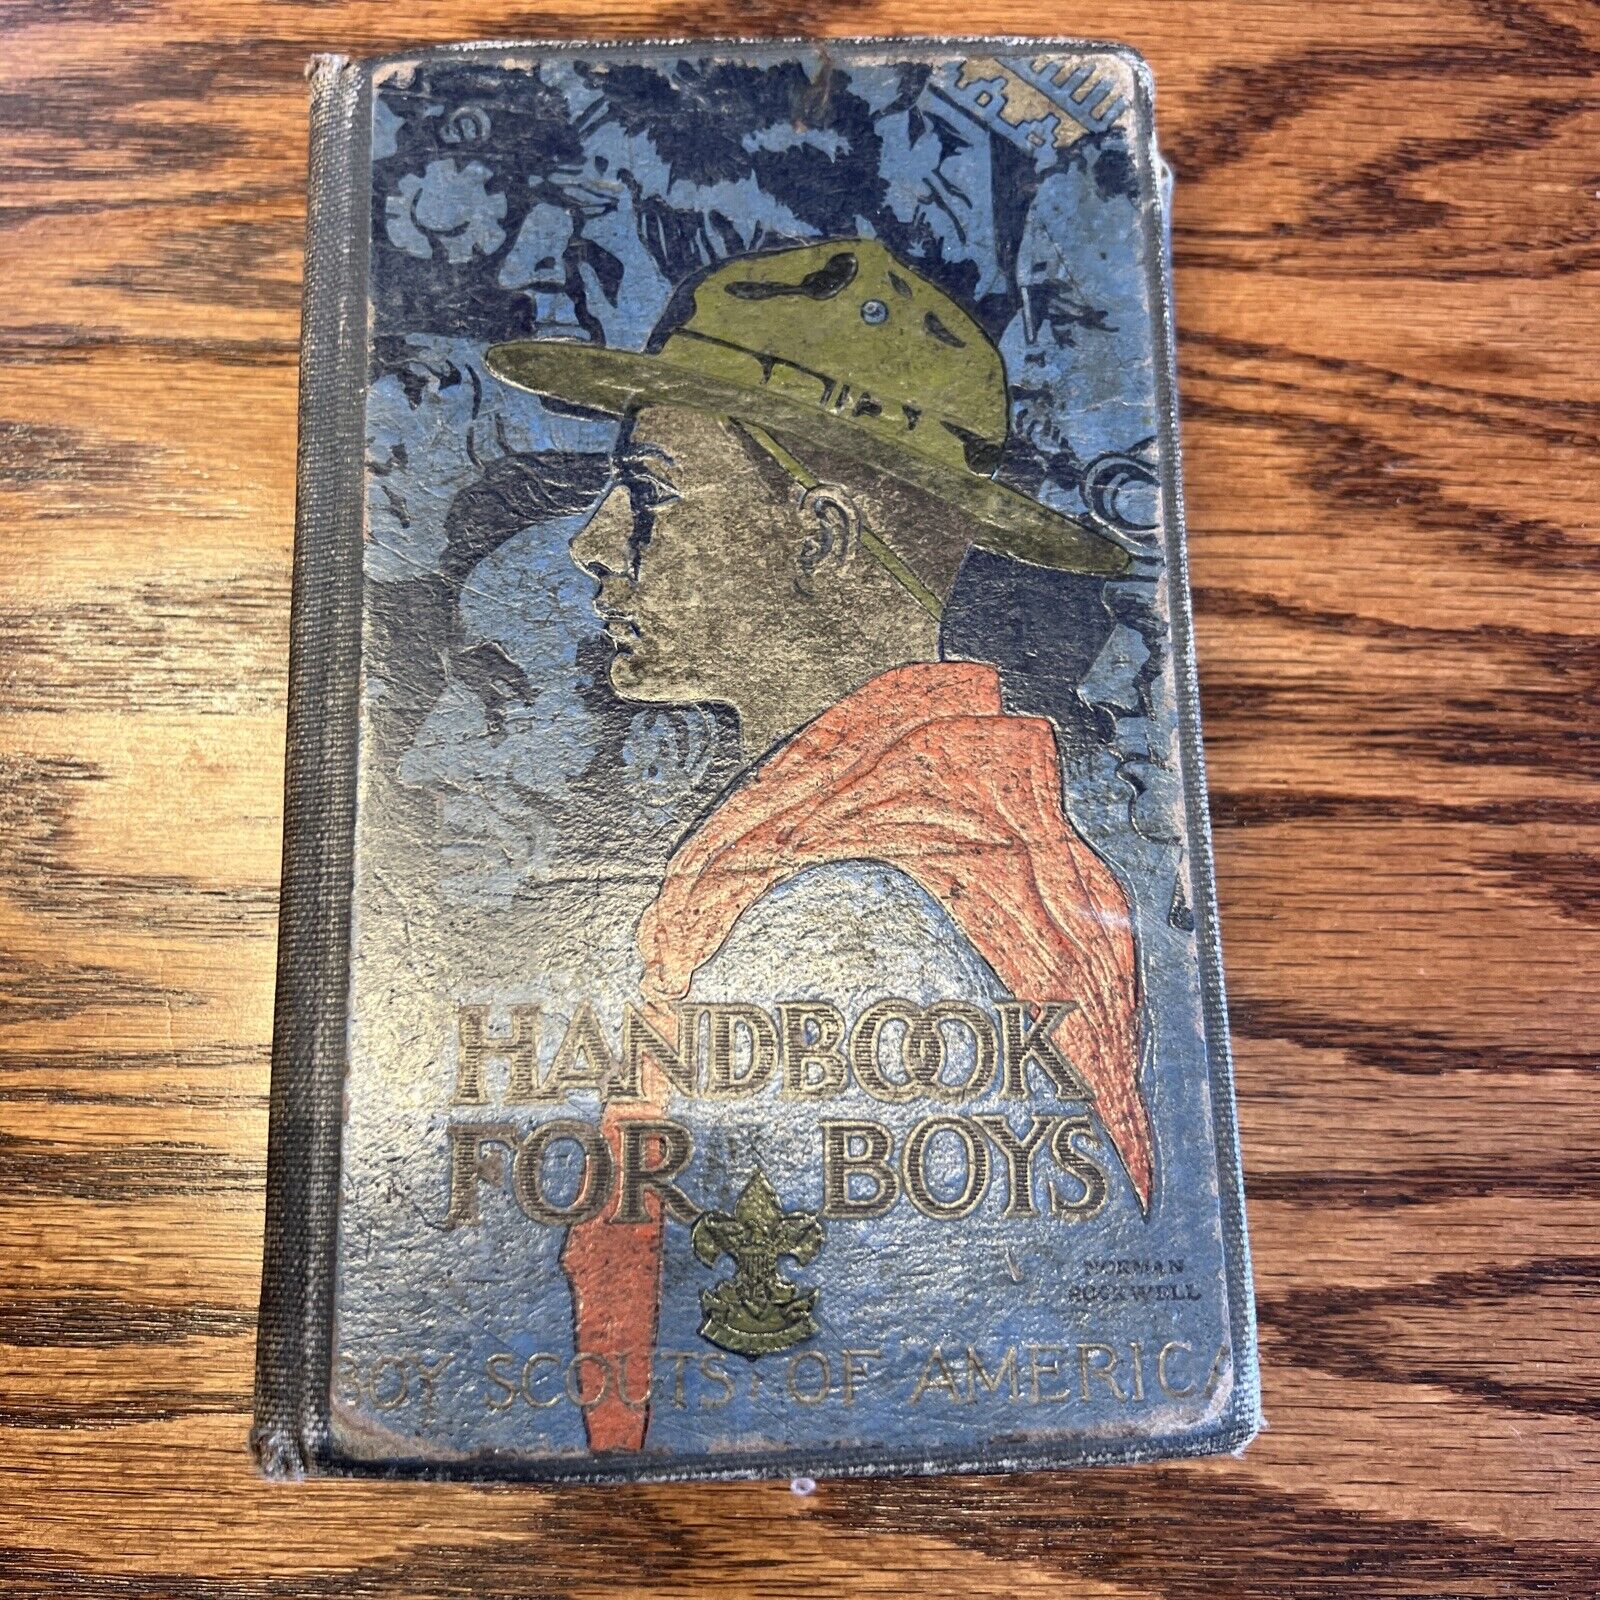 Boy Scouts Handbook For Boys circa 1920s Norman Rockwell Cover, Fair Condition